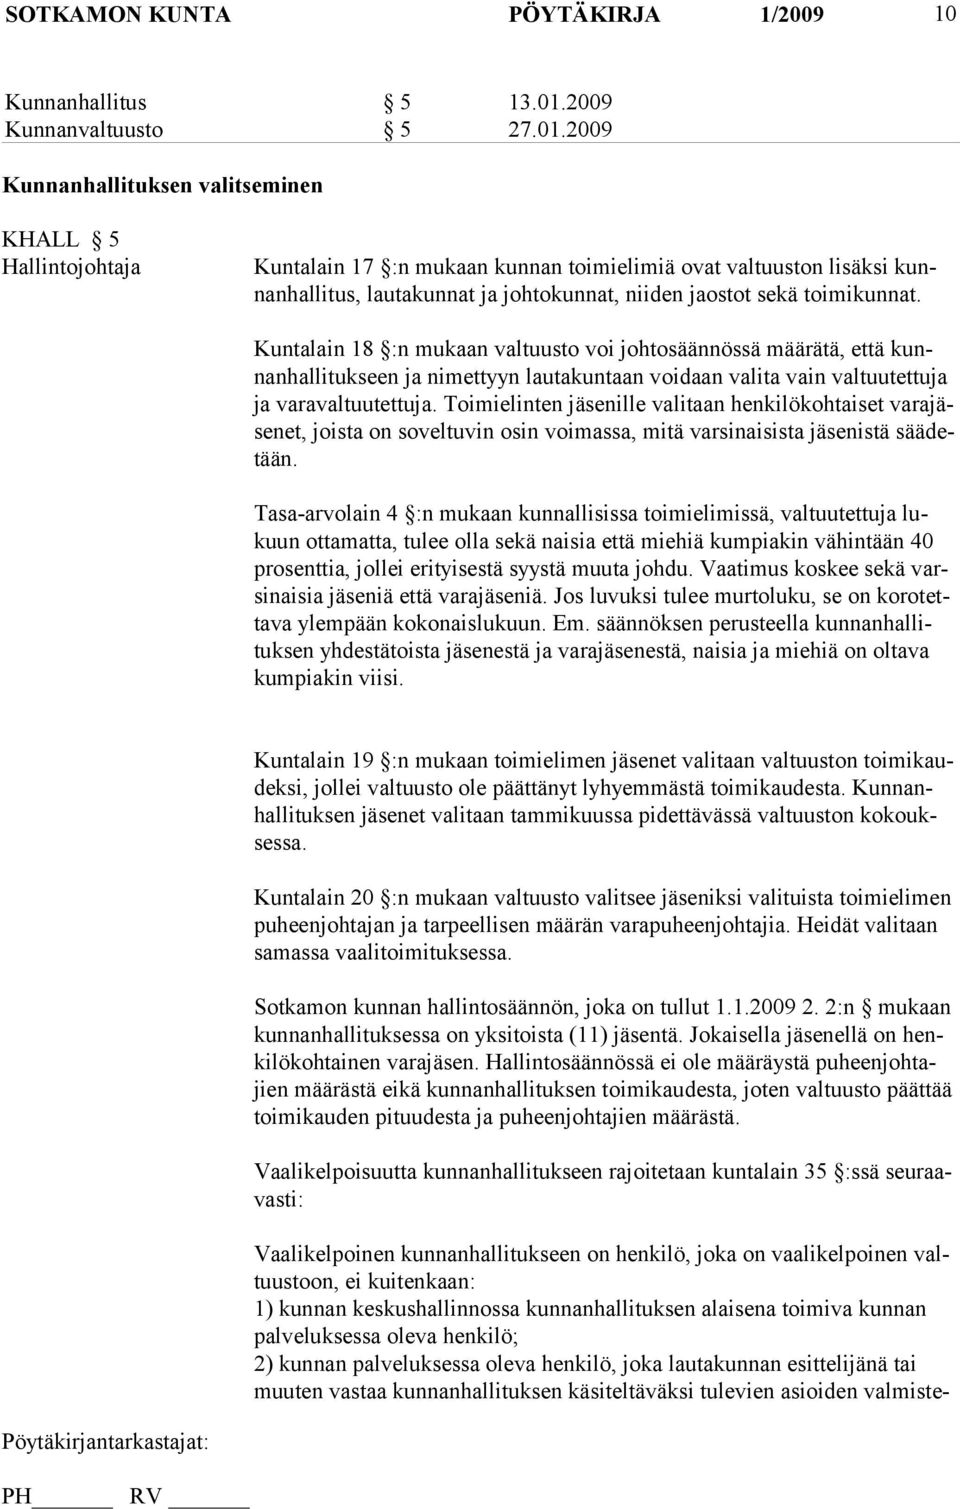 2009 Kunnanhallituksen valitseminen KHALL 5 Hallintojohtaja Kuntalain 17 :n mukaan kunnan toimielimiä ovat valtuuston lisäksi kunnanhallitus, lautakunnat ja johtokunnat, niiden jaostot sekä